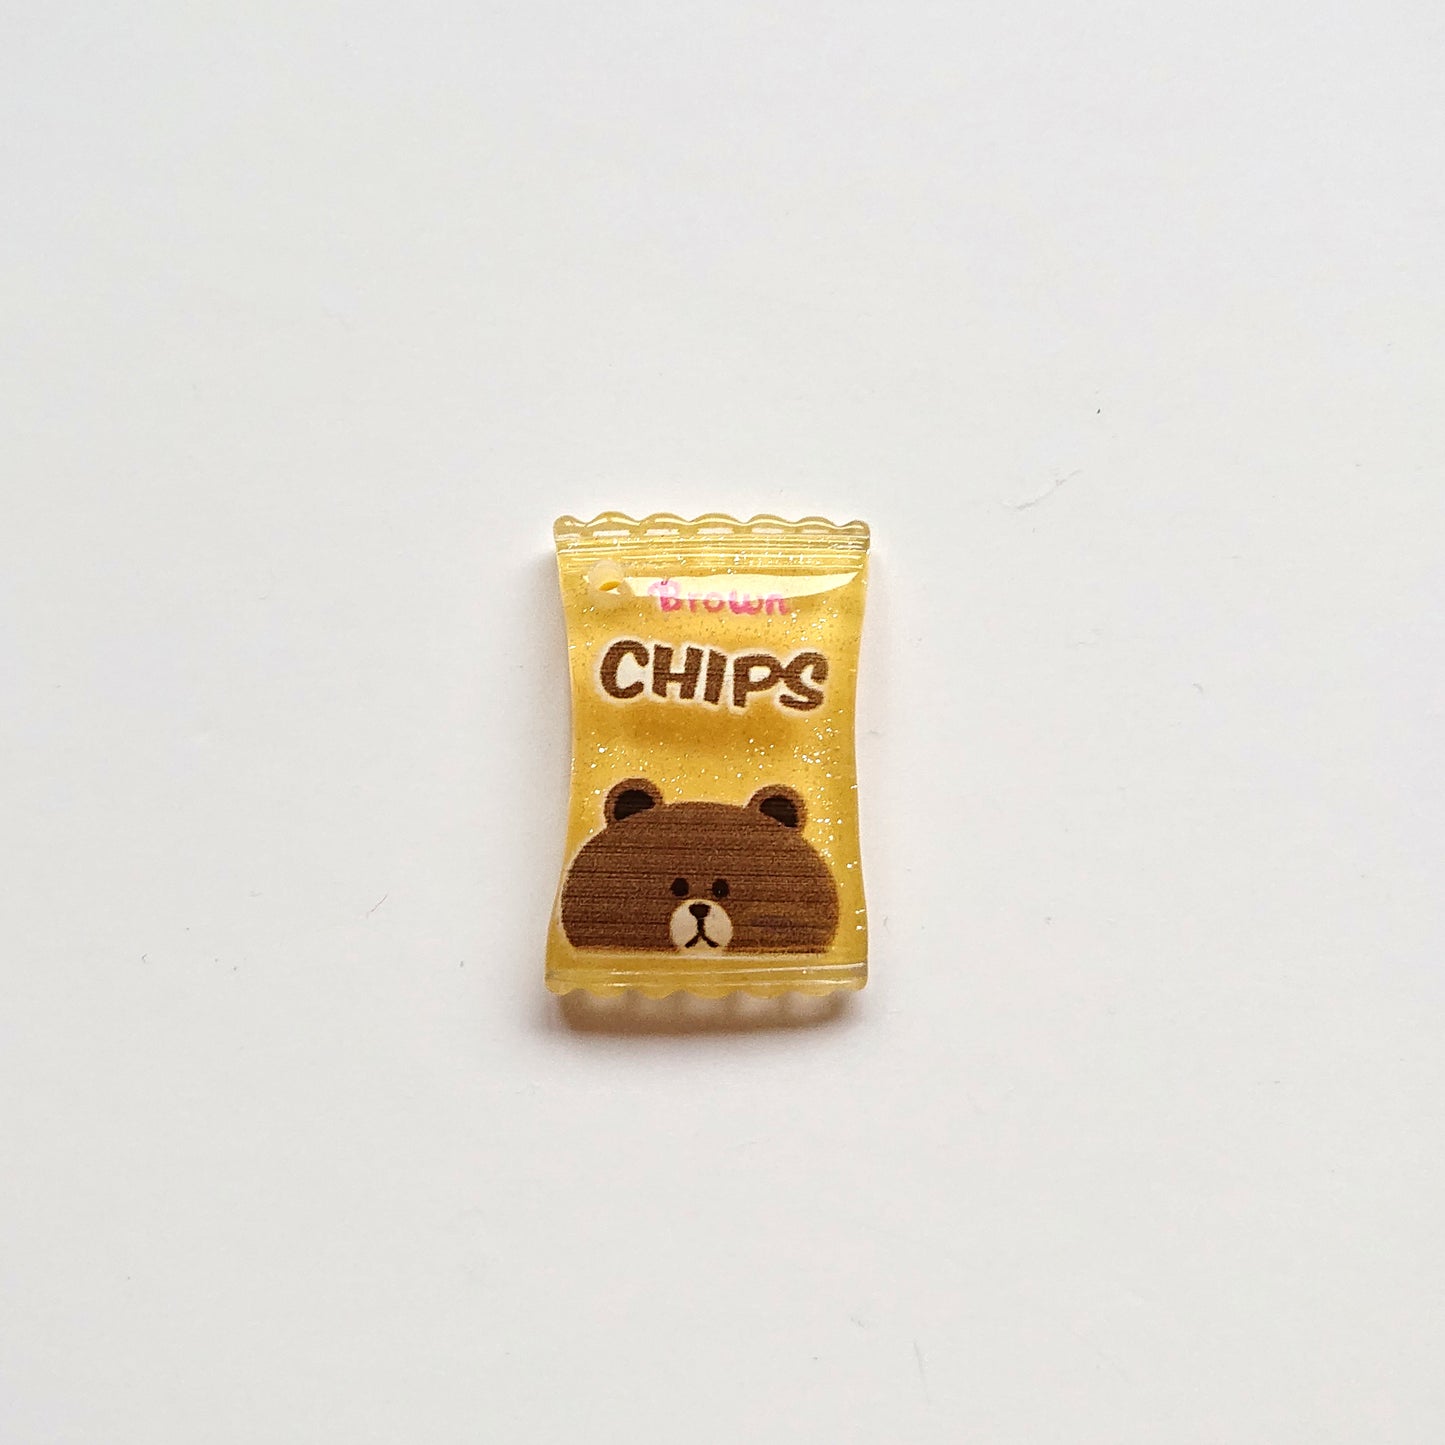 Zipper Charm - Crisps/Chips (yellow)